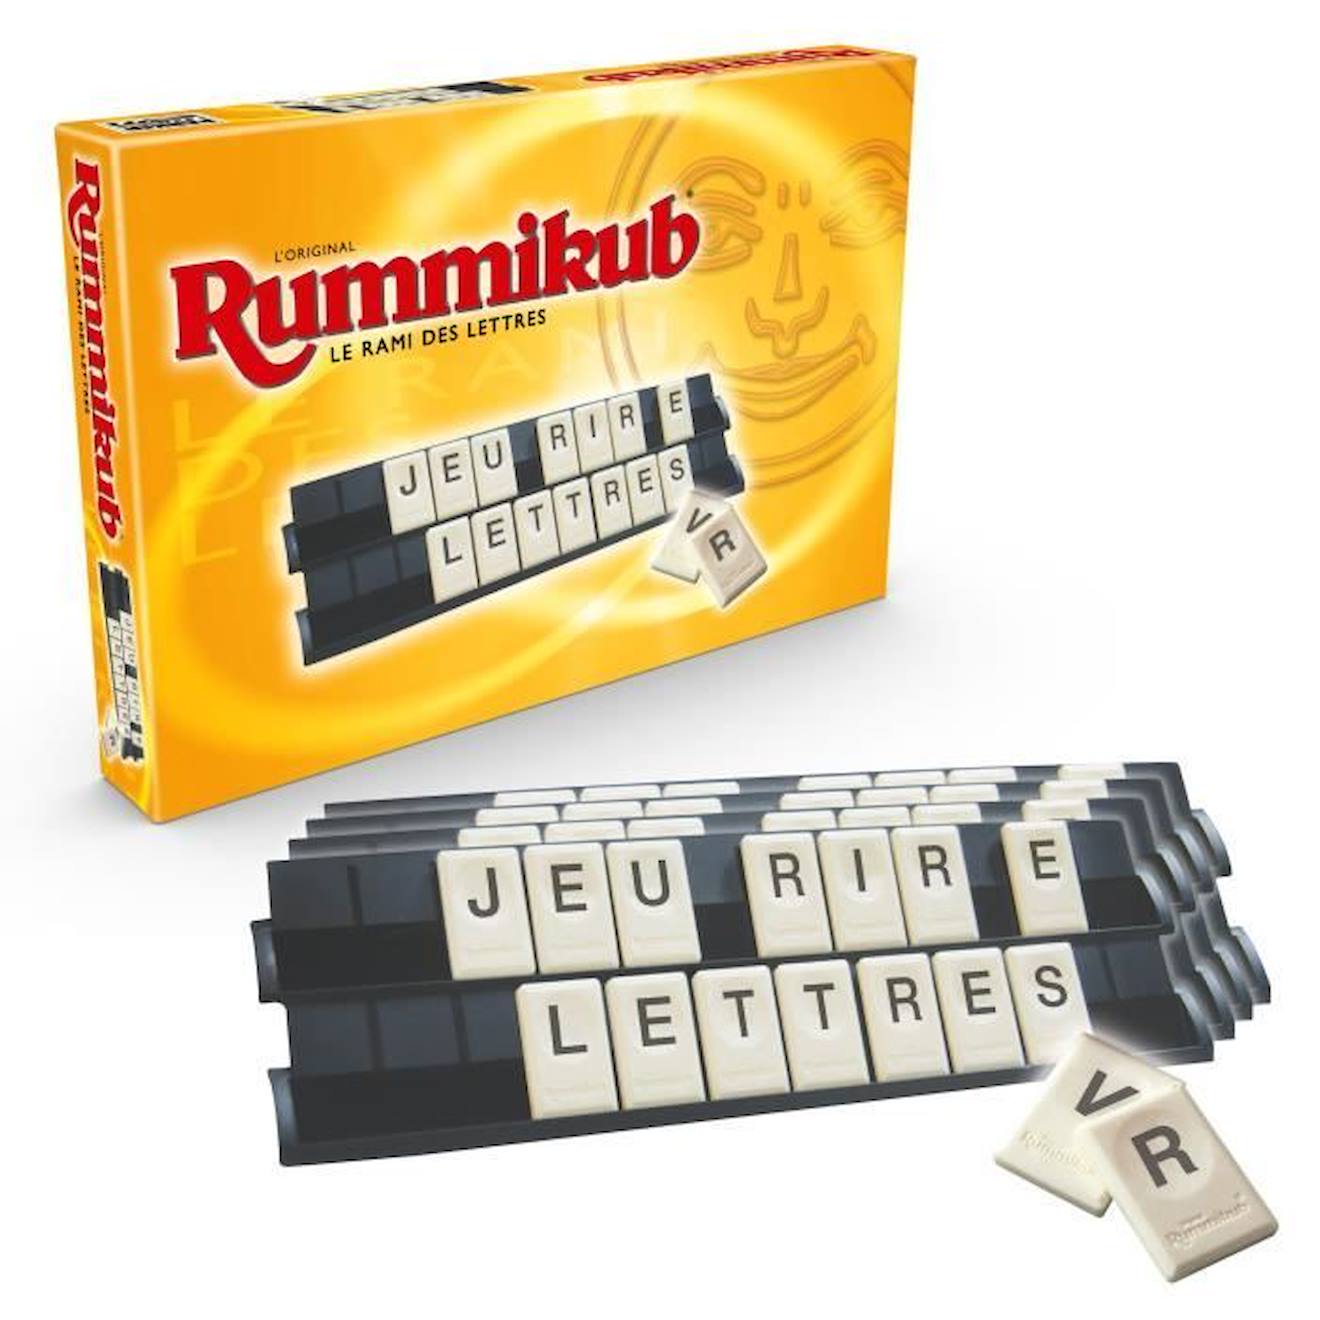 RUMMIKUB - Lettres - Jeu de societe de reflexion - Jeu educatif jaune -  Hasbro Gaming